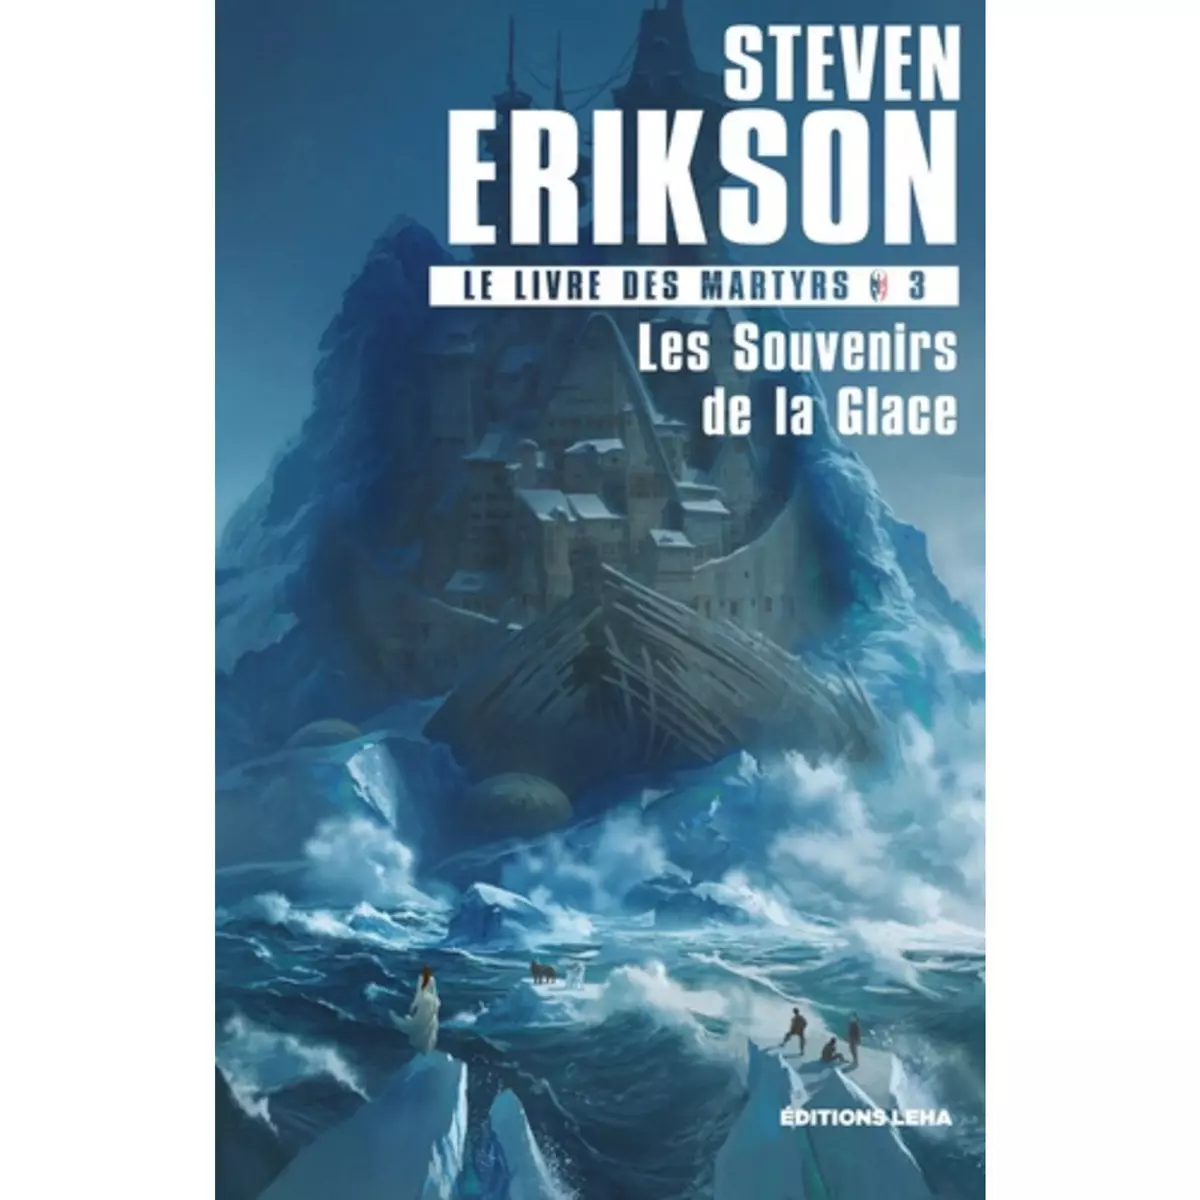  LE LIVRE DES MARTYRS TOME 3 : LES SOUVENIRS DE LA GLACE, Erikson Steven